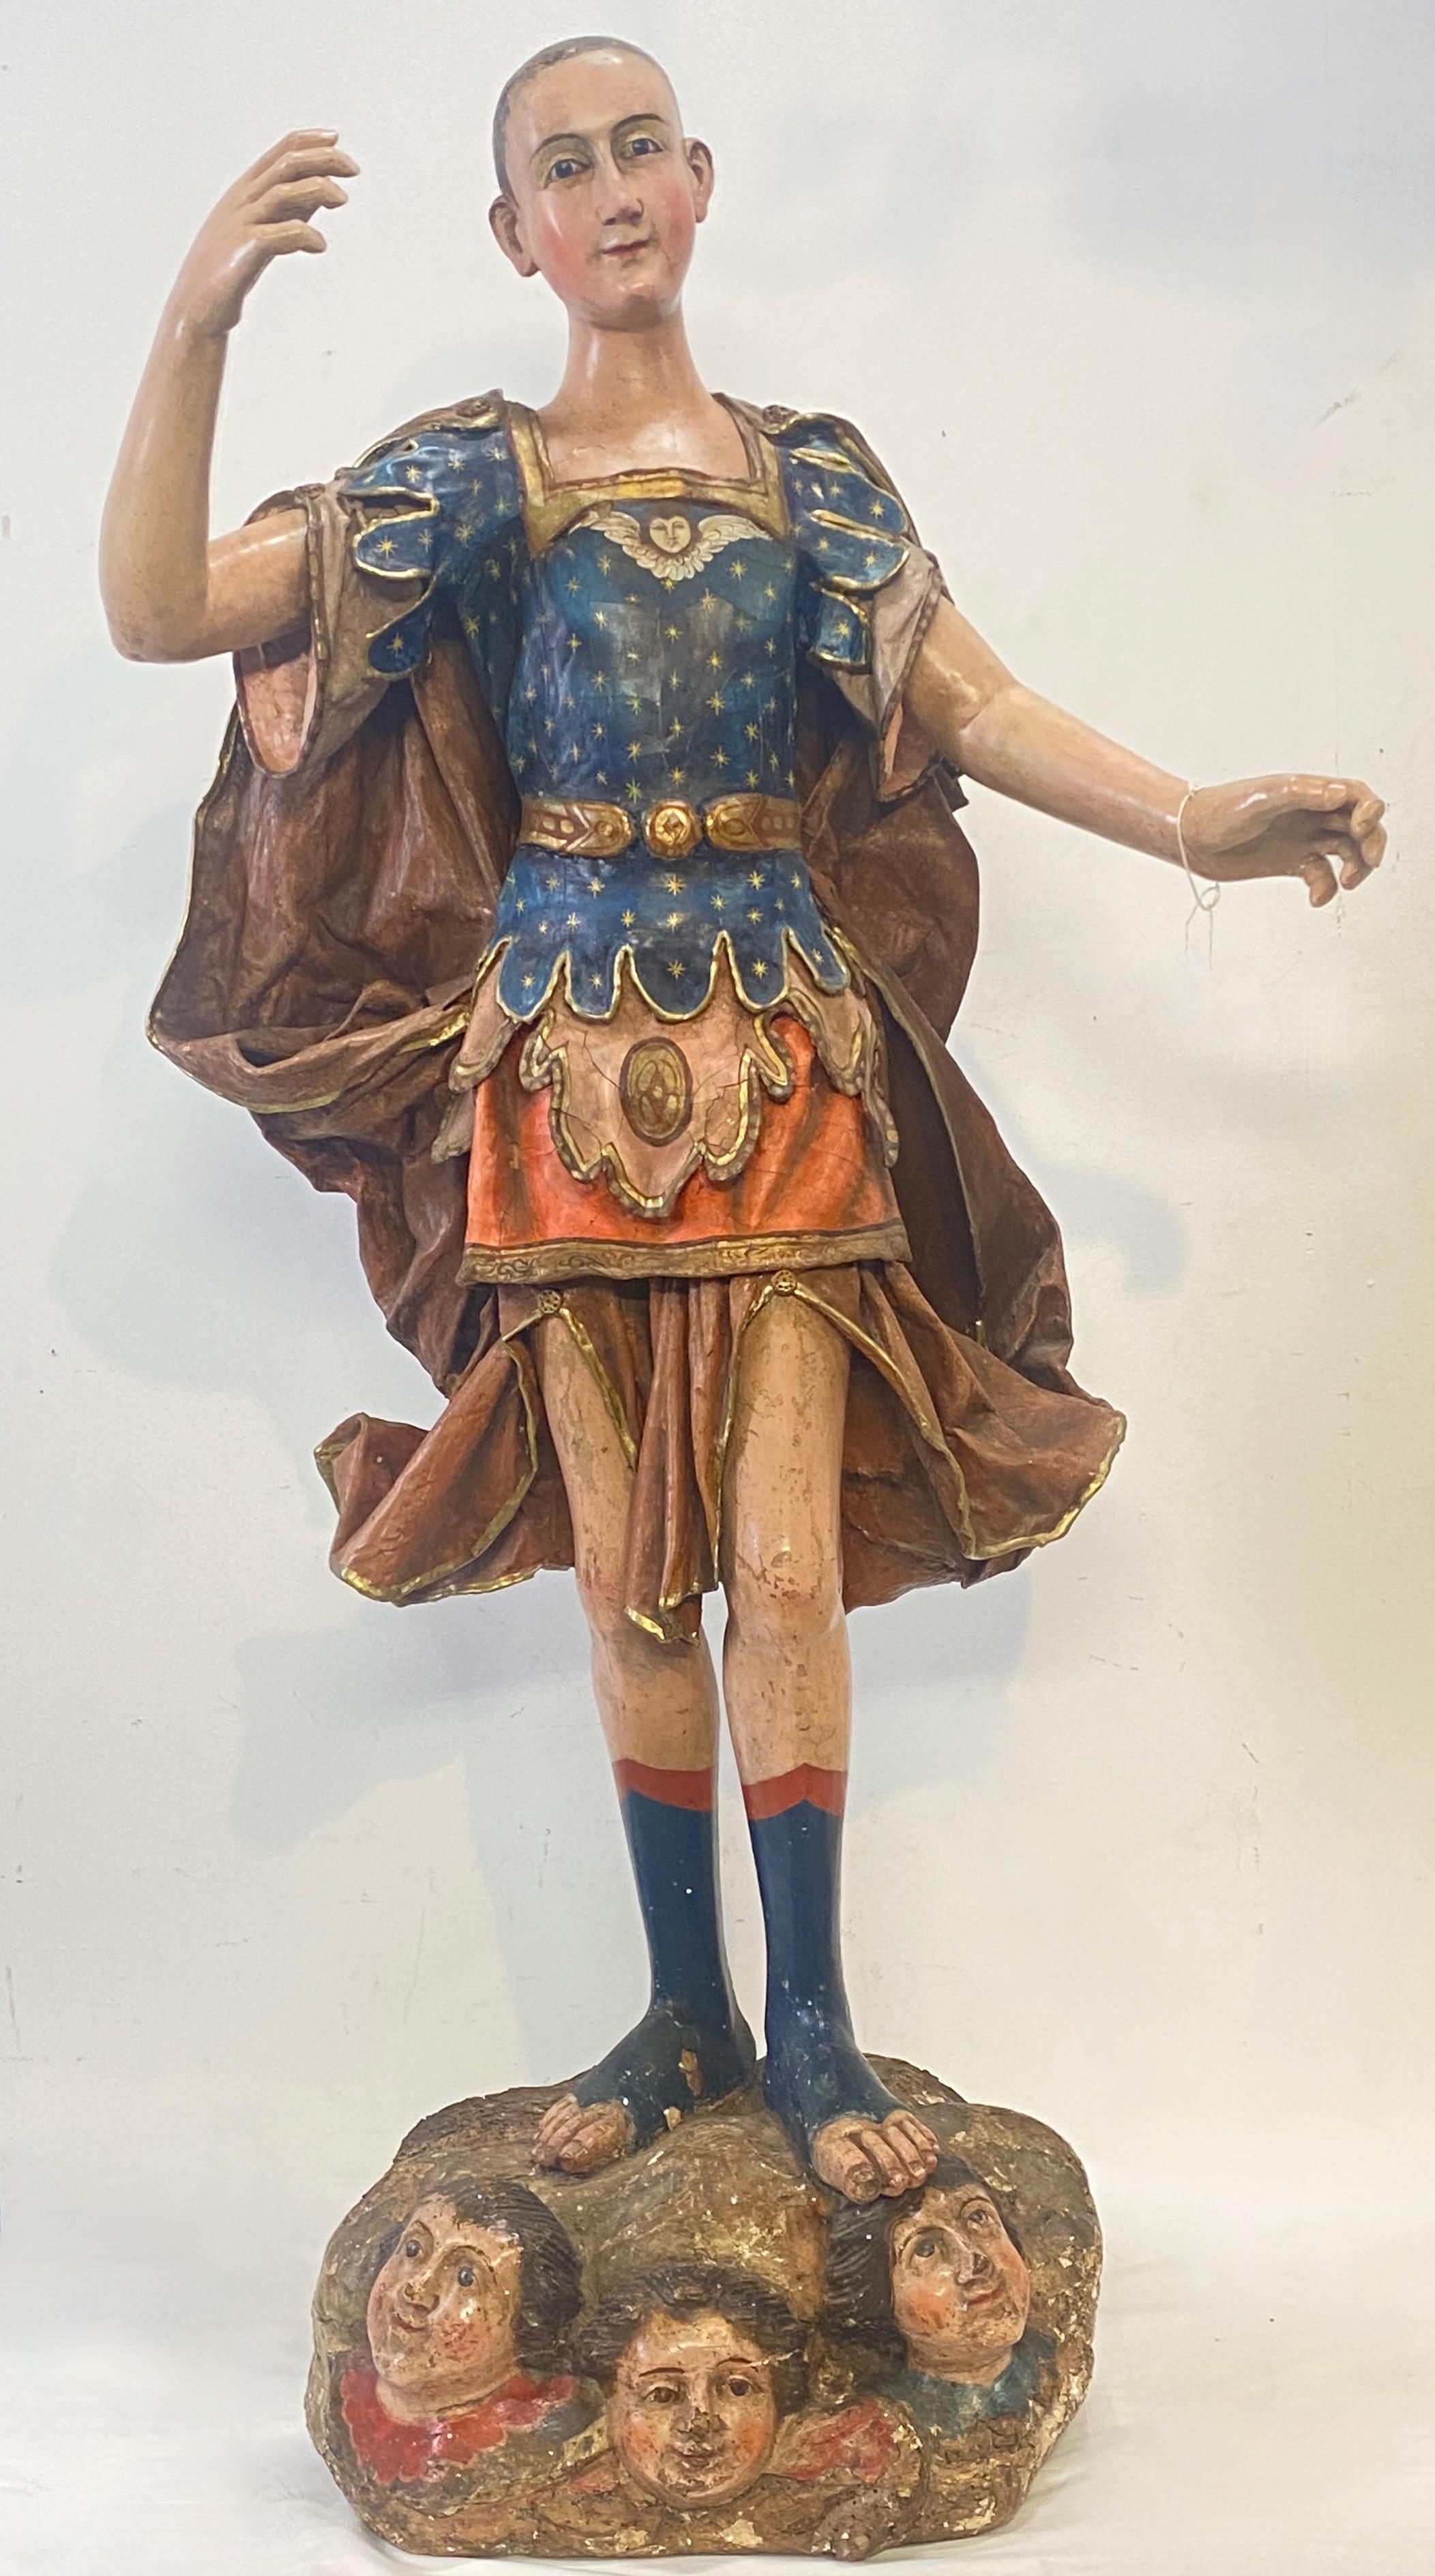 Eine beeindruckende Santo-Figur in Lebensgröße aus dem späten 18. Jahrhundert aus der spanischen Kolonialzeit, wahrscheinlich aus Mexiko. Das geschnitzte und bemalte Holz, der Umhang und die anderen Kleidungsstücke sind aus gessoider und bemalter